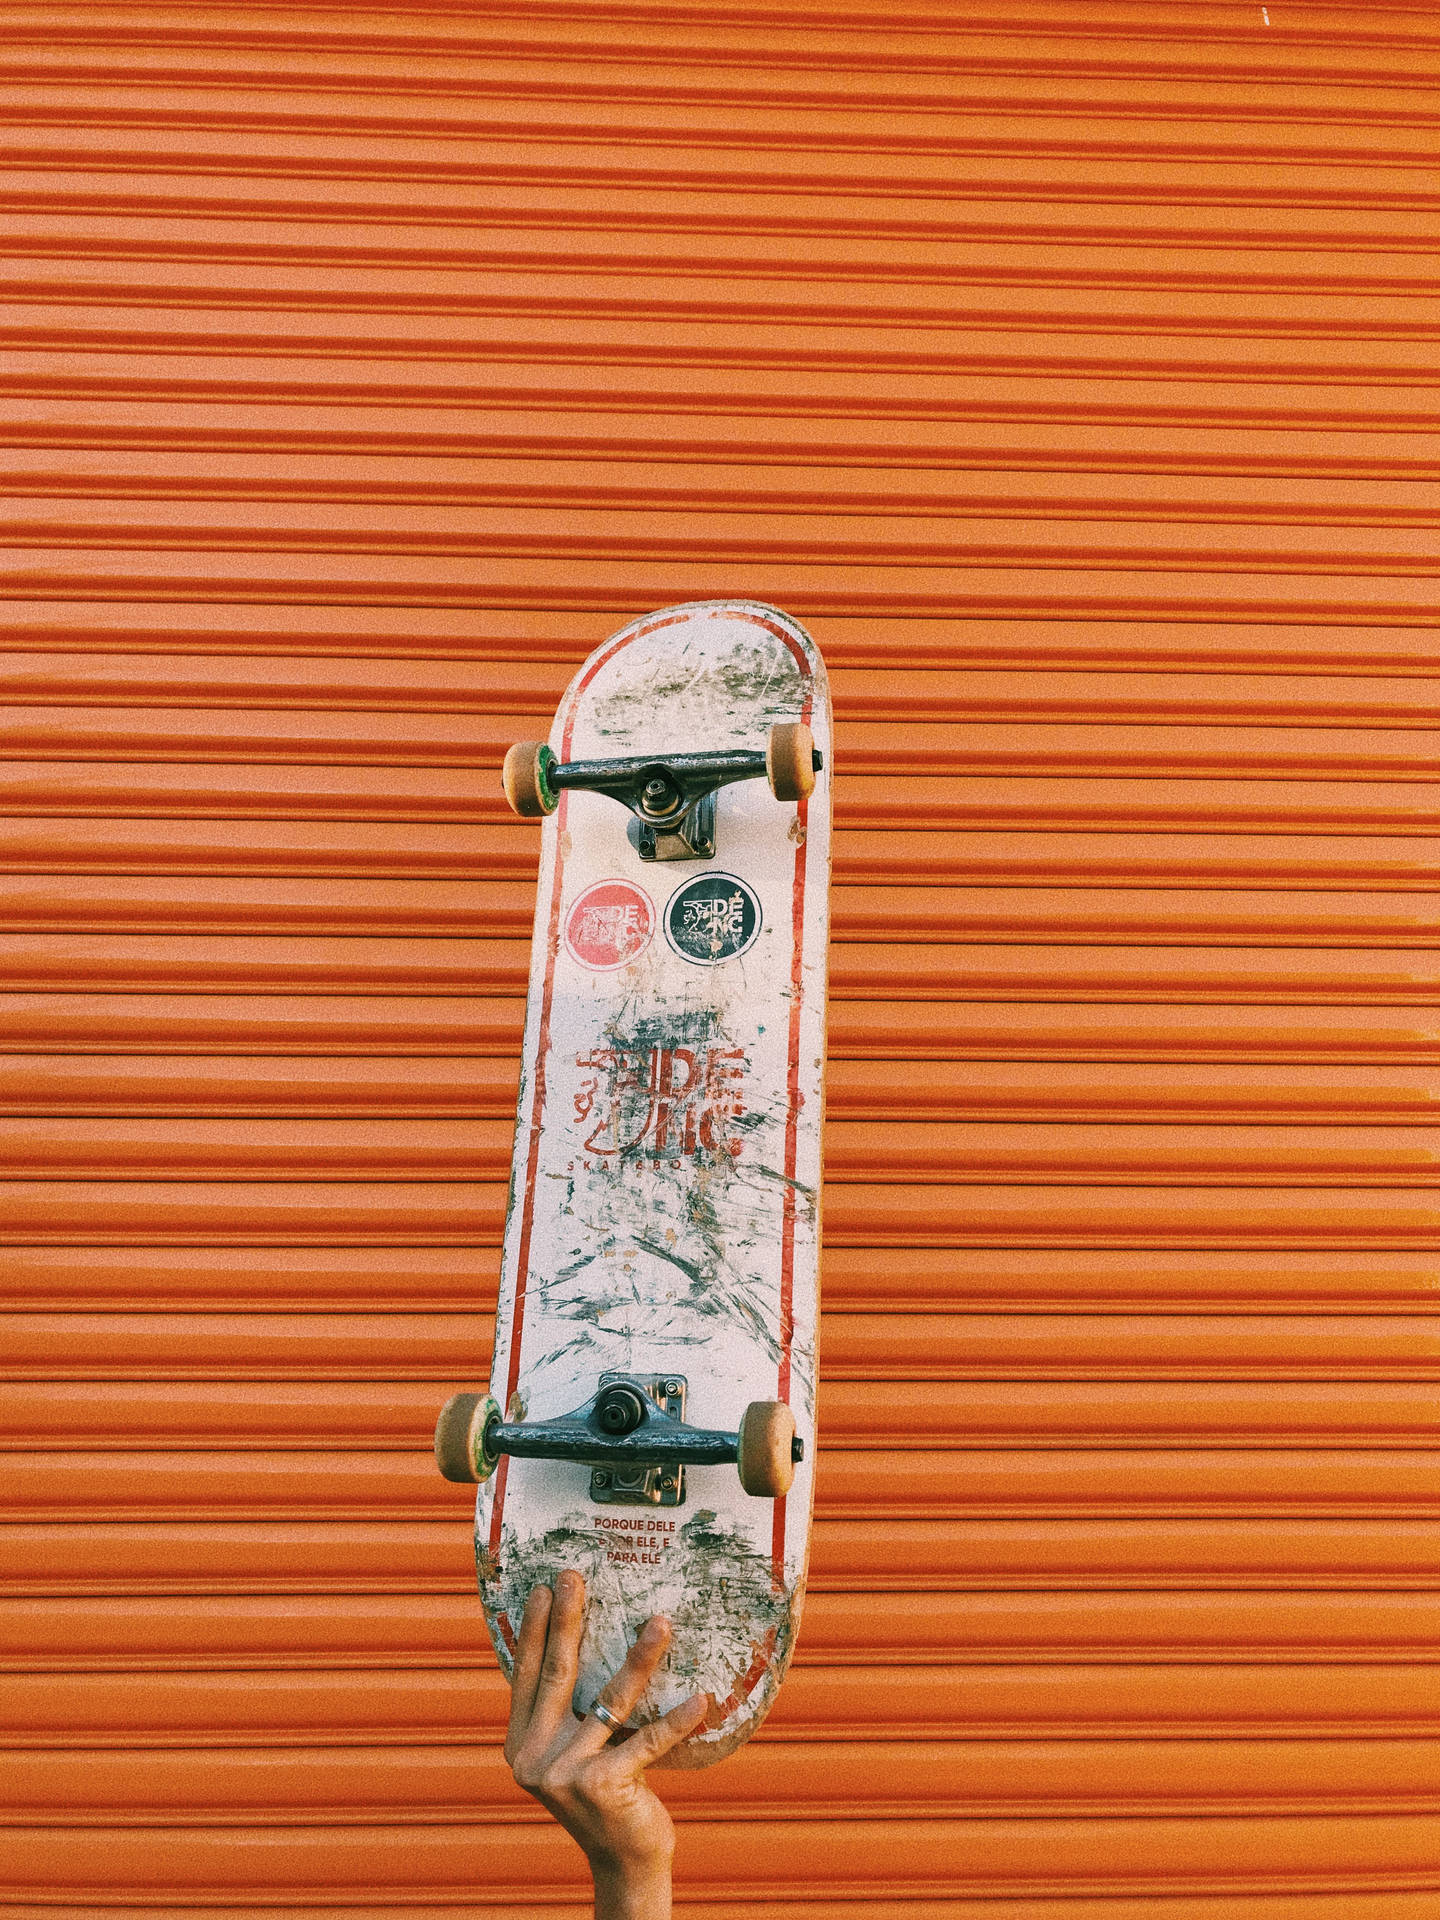 Skateboard In Orange Gate Background